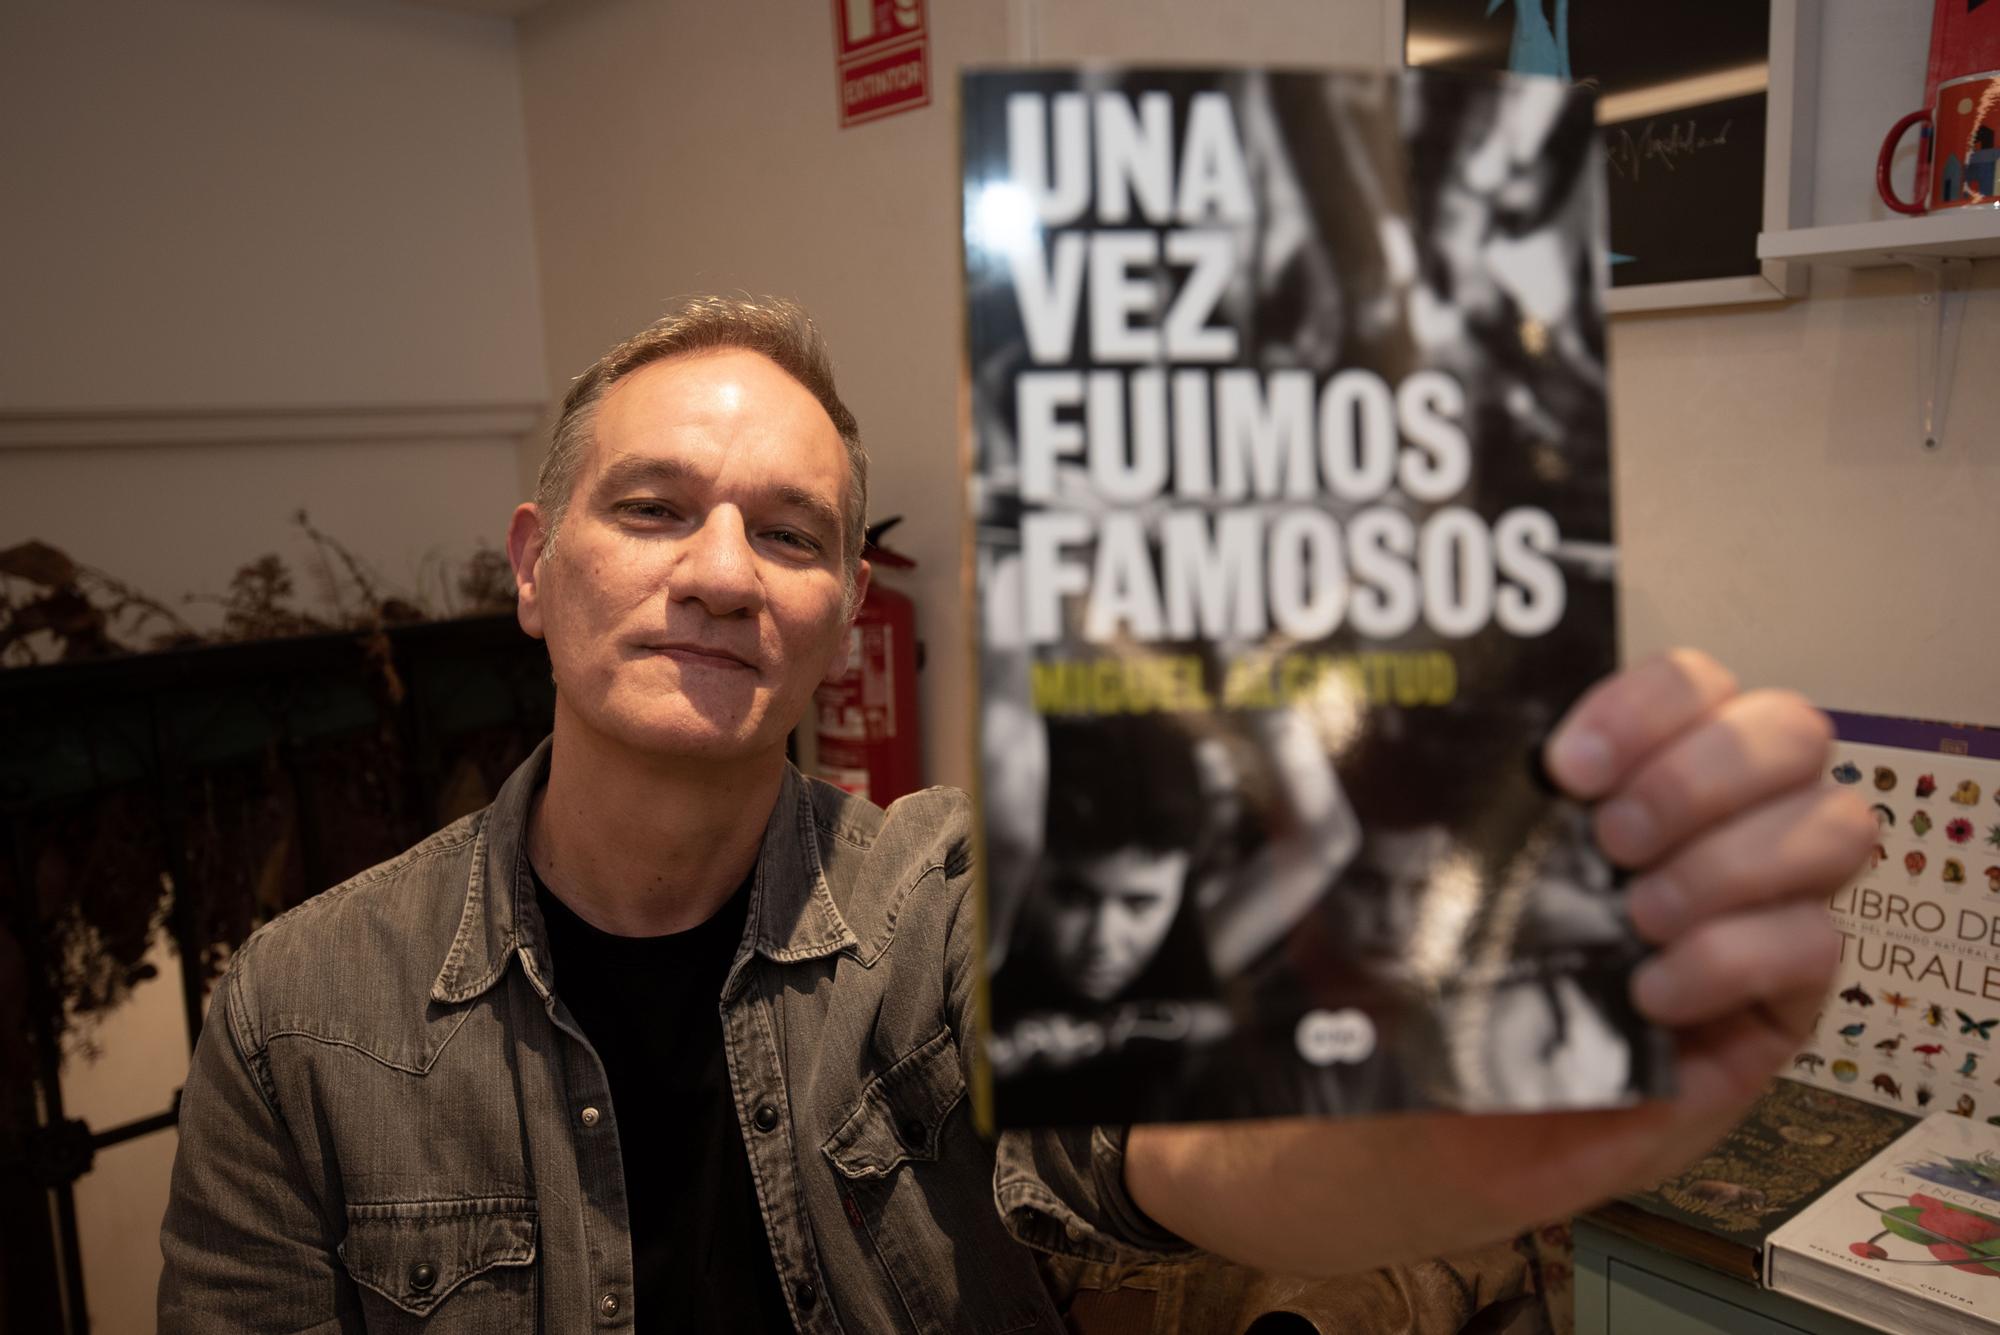 El escritor, cineasta y guionista Miguel Alcantud presenta ‘Una vez fuimos famosos’ en la librería 'Bululú'